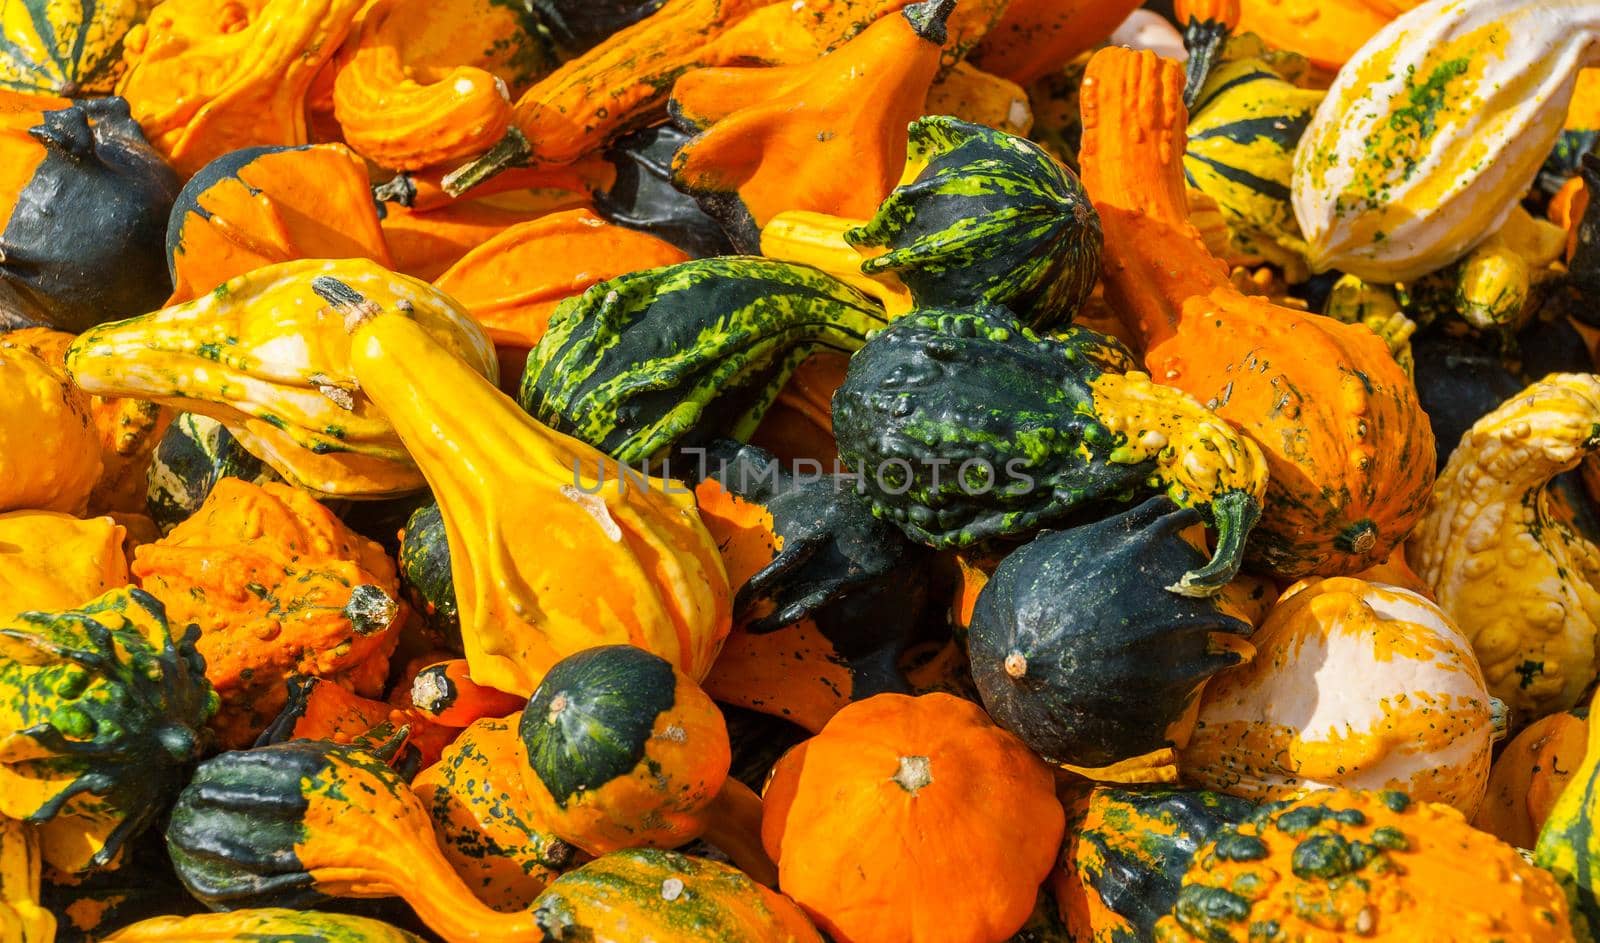 ornamental gourds background by bildgigant